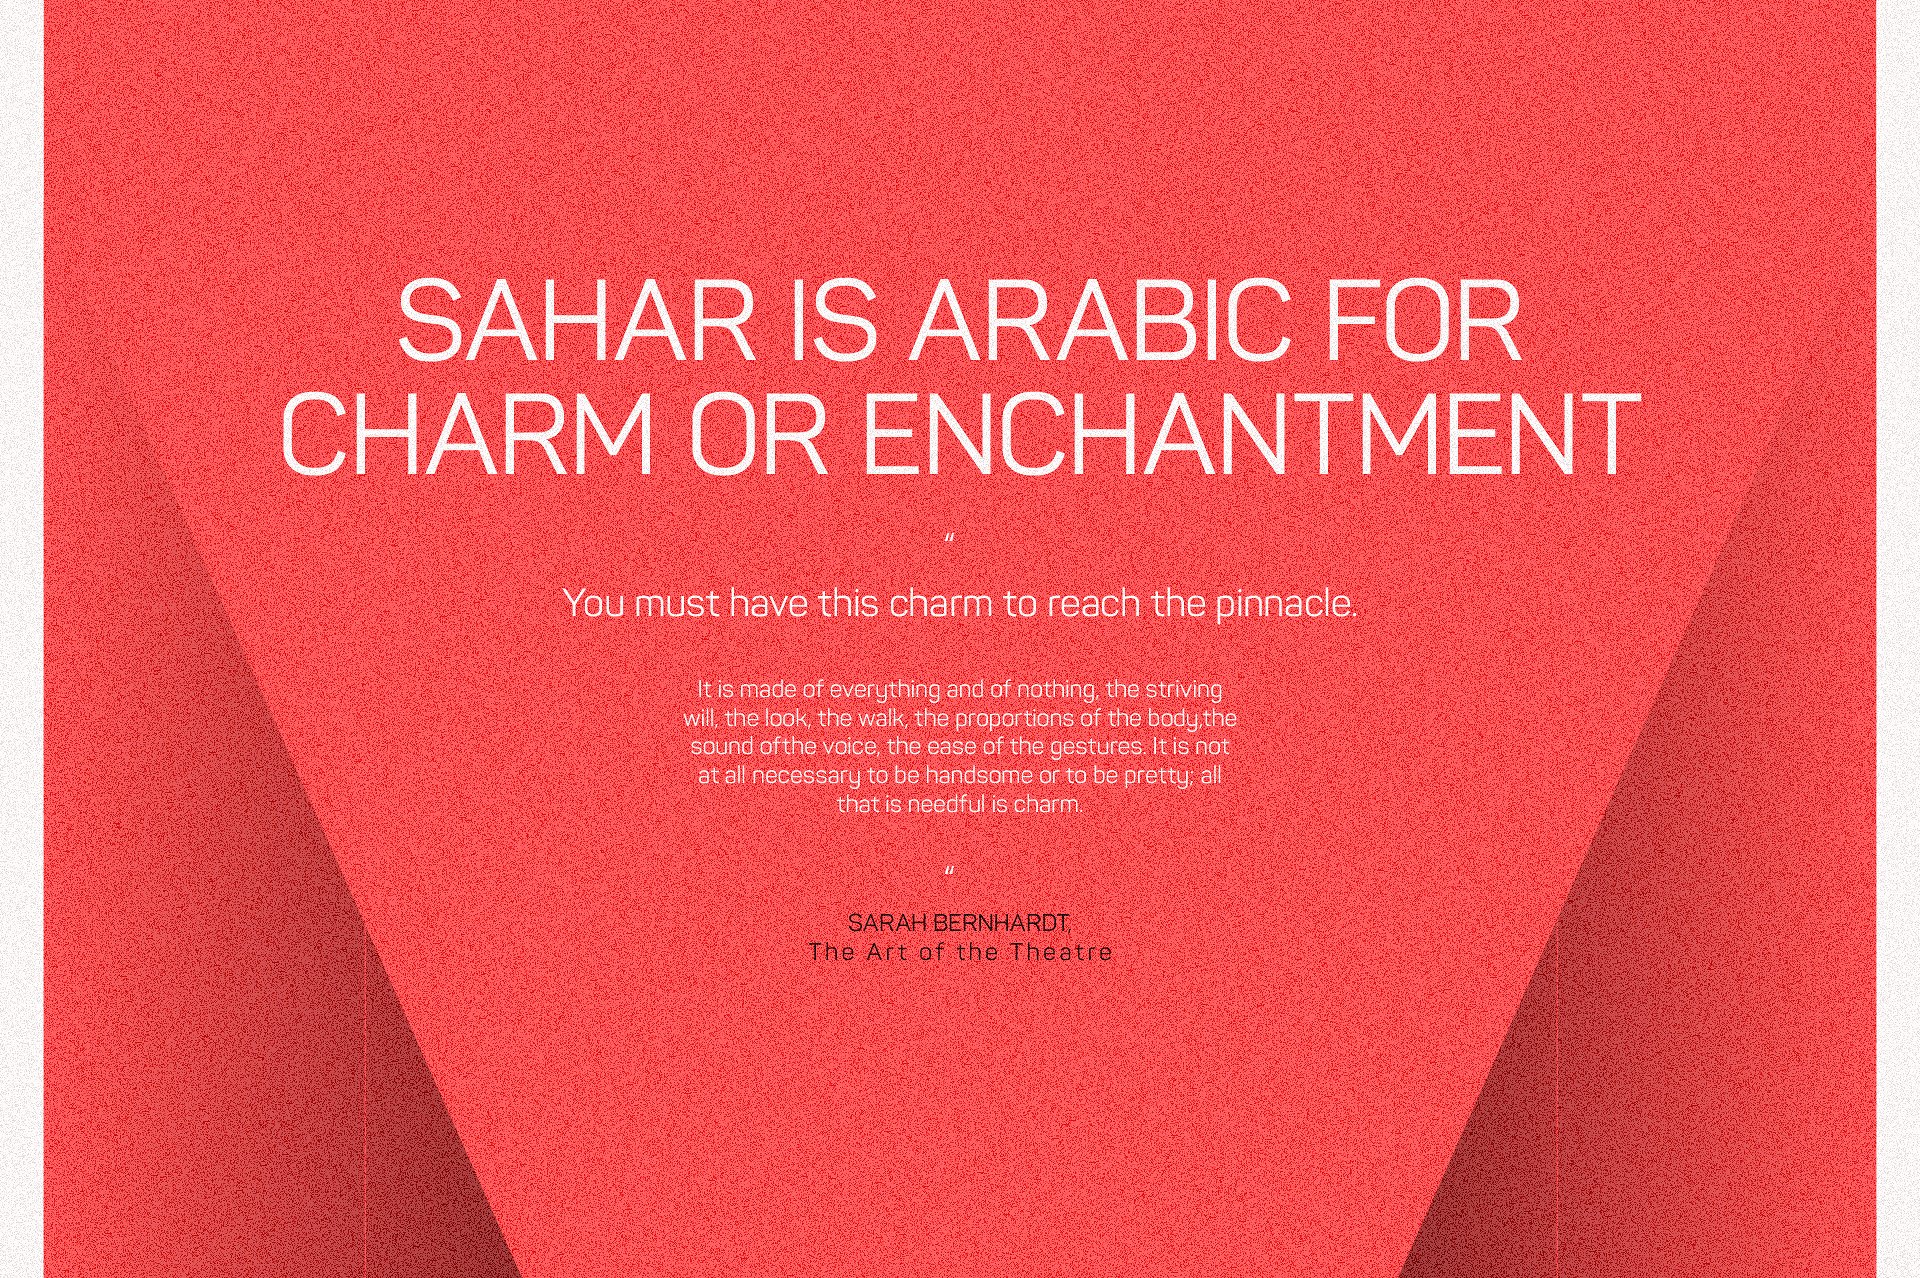 Sahar Heavy 1 Font preview